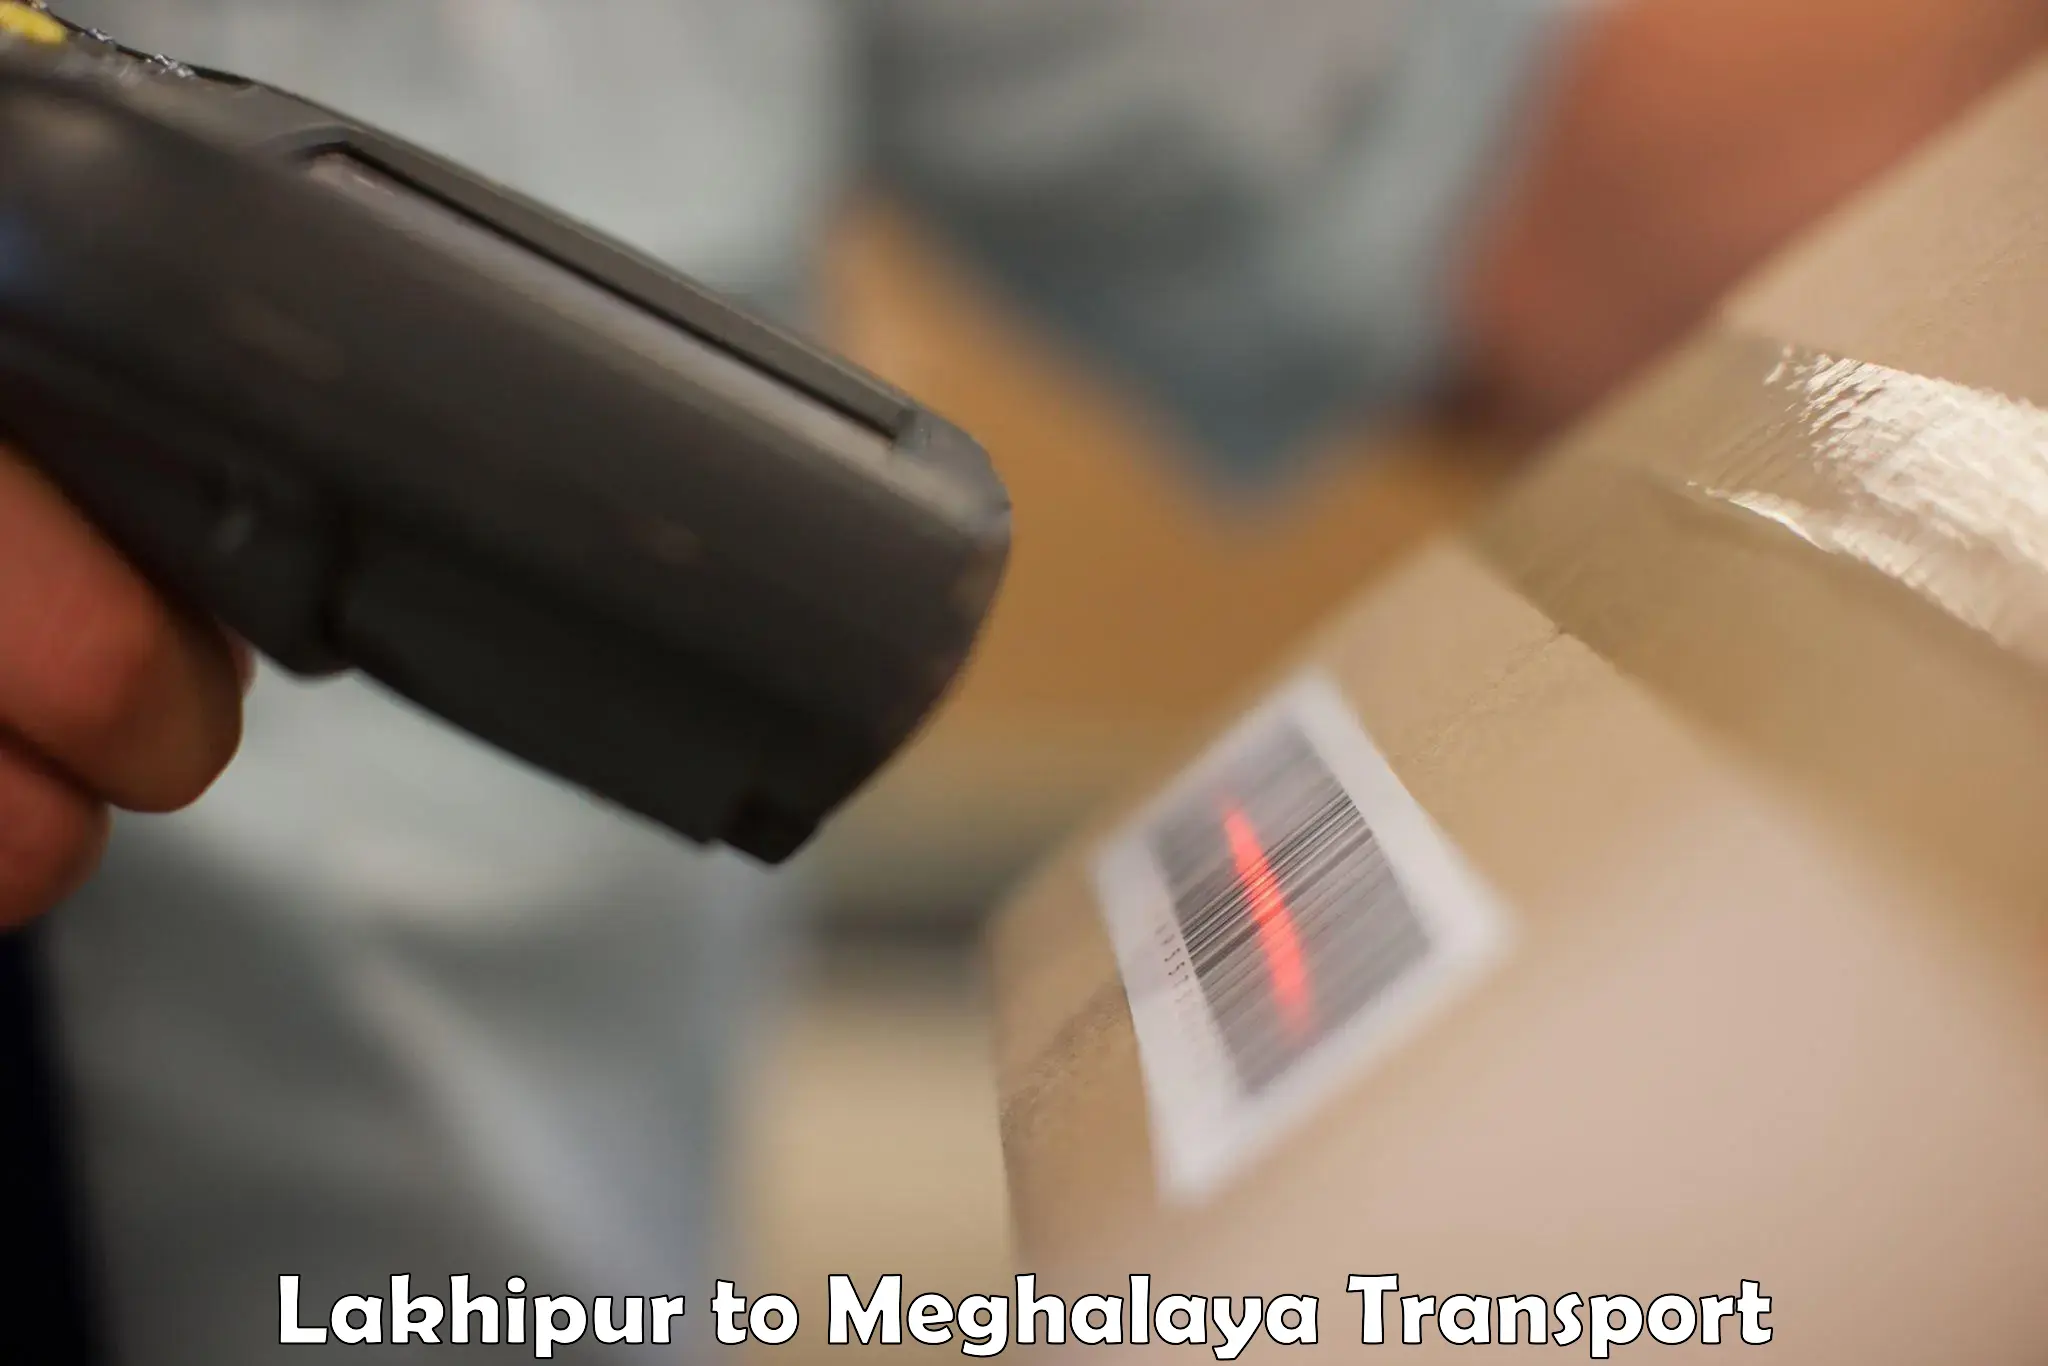 Furniture transport service Lakhipur to Williamnagar